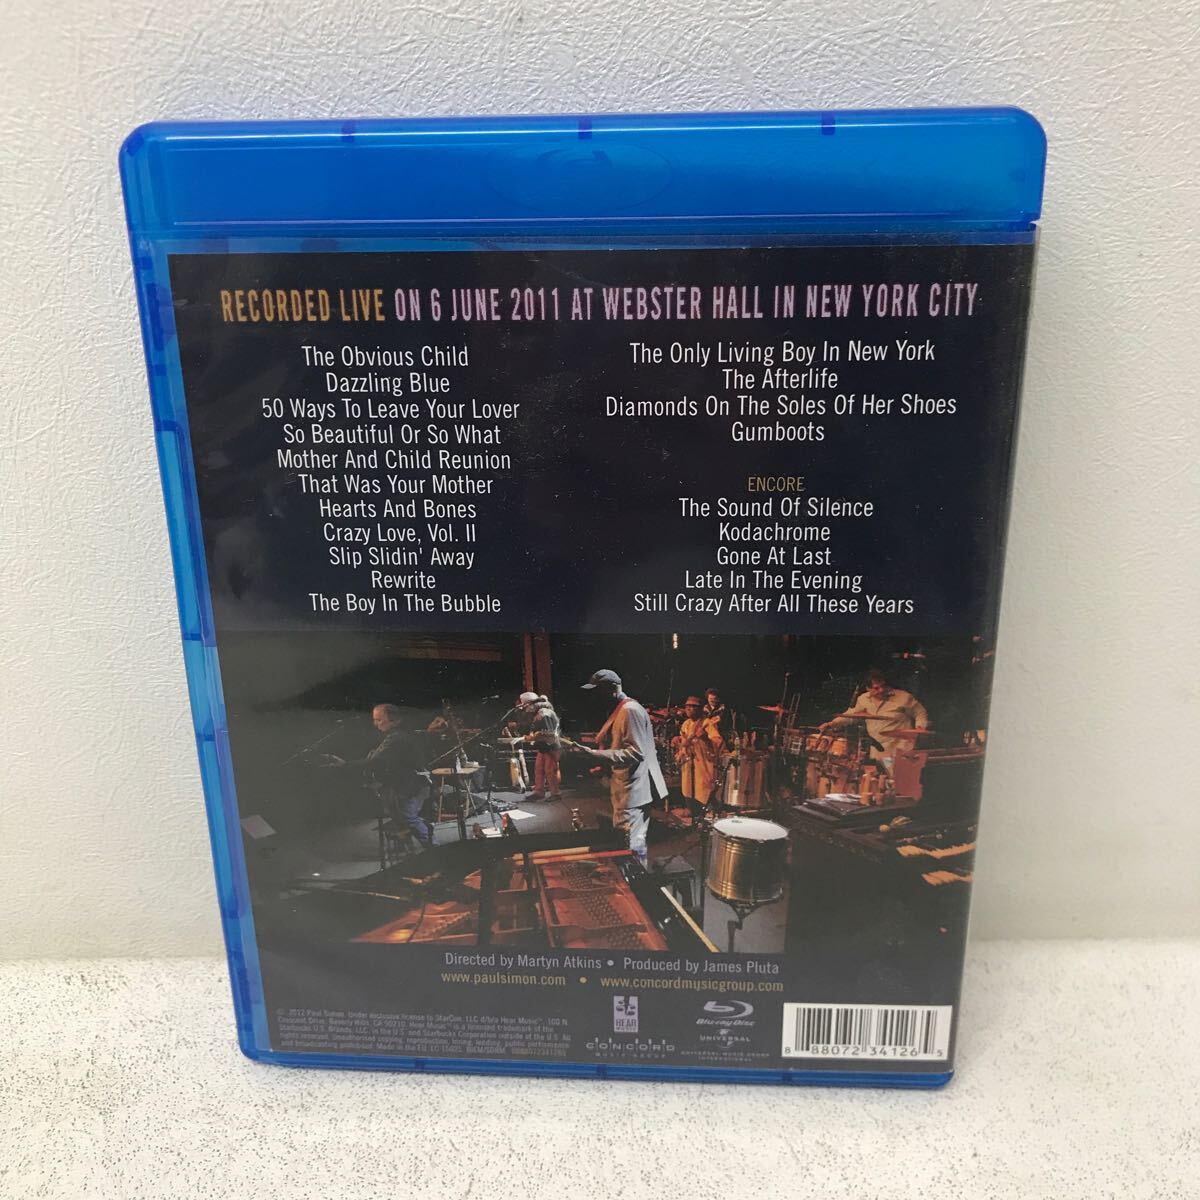 I0308B3 PAUL SIMON ポール・サイモン LIVE IN NEW YORK CITY Blu-ray ブルーレイ セル版 輸入盤 ユニバーサル 音楽 洋楽の画像2